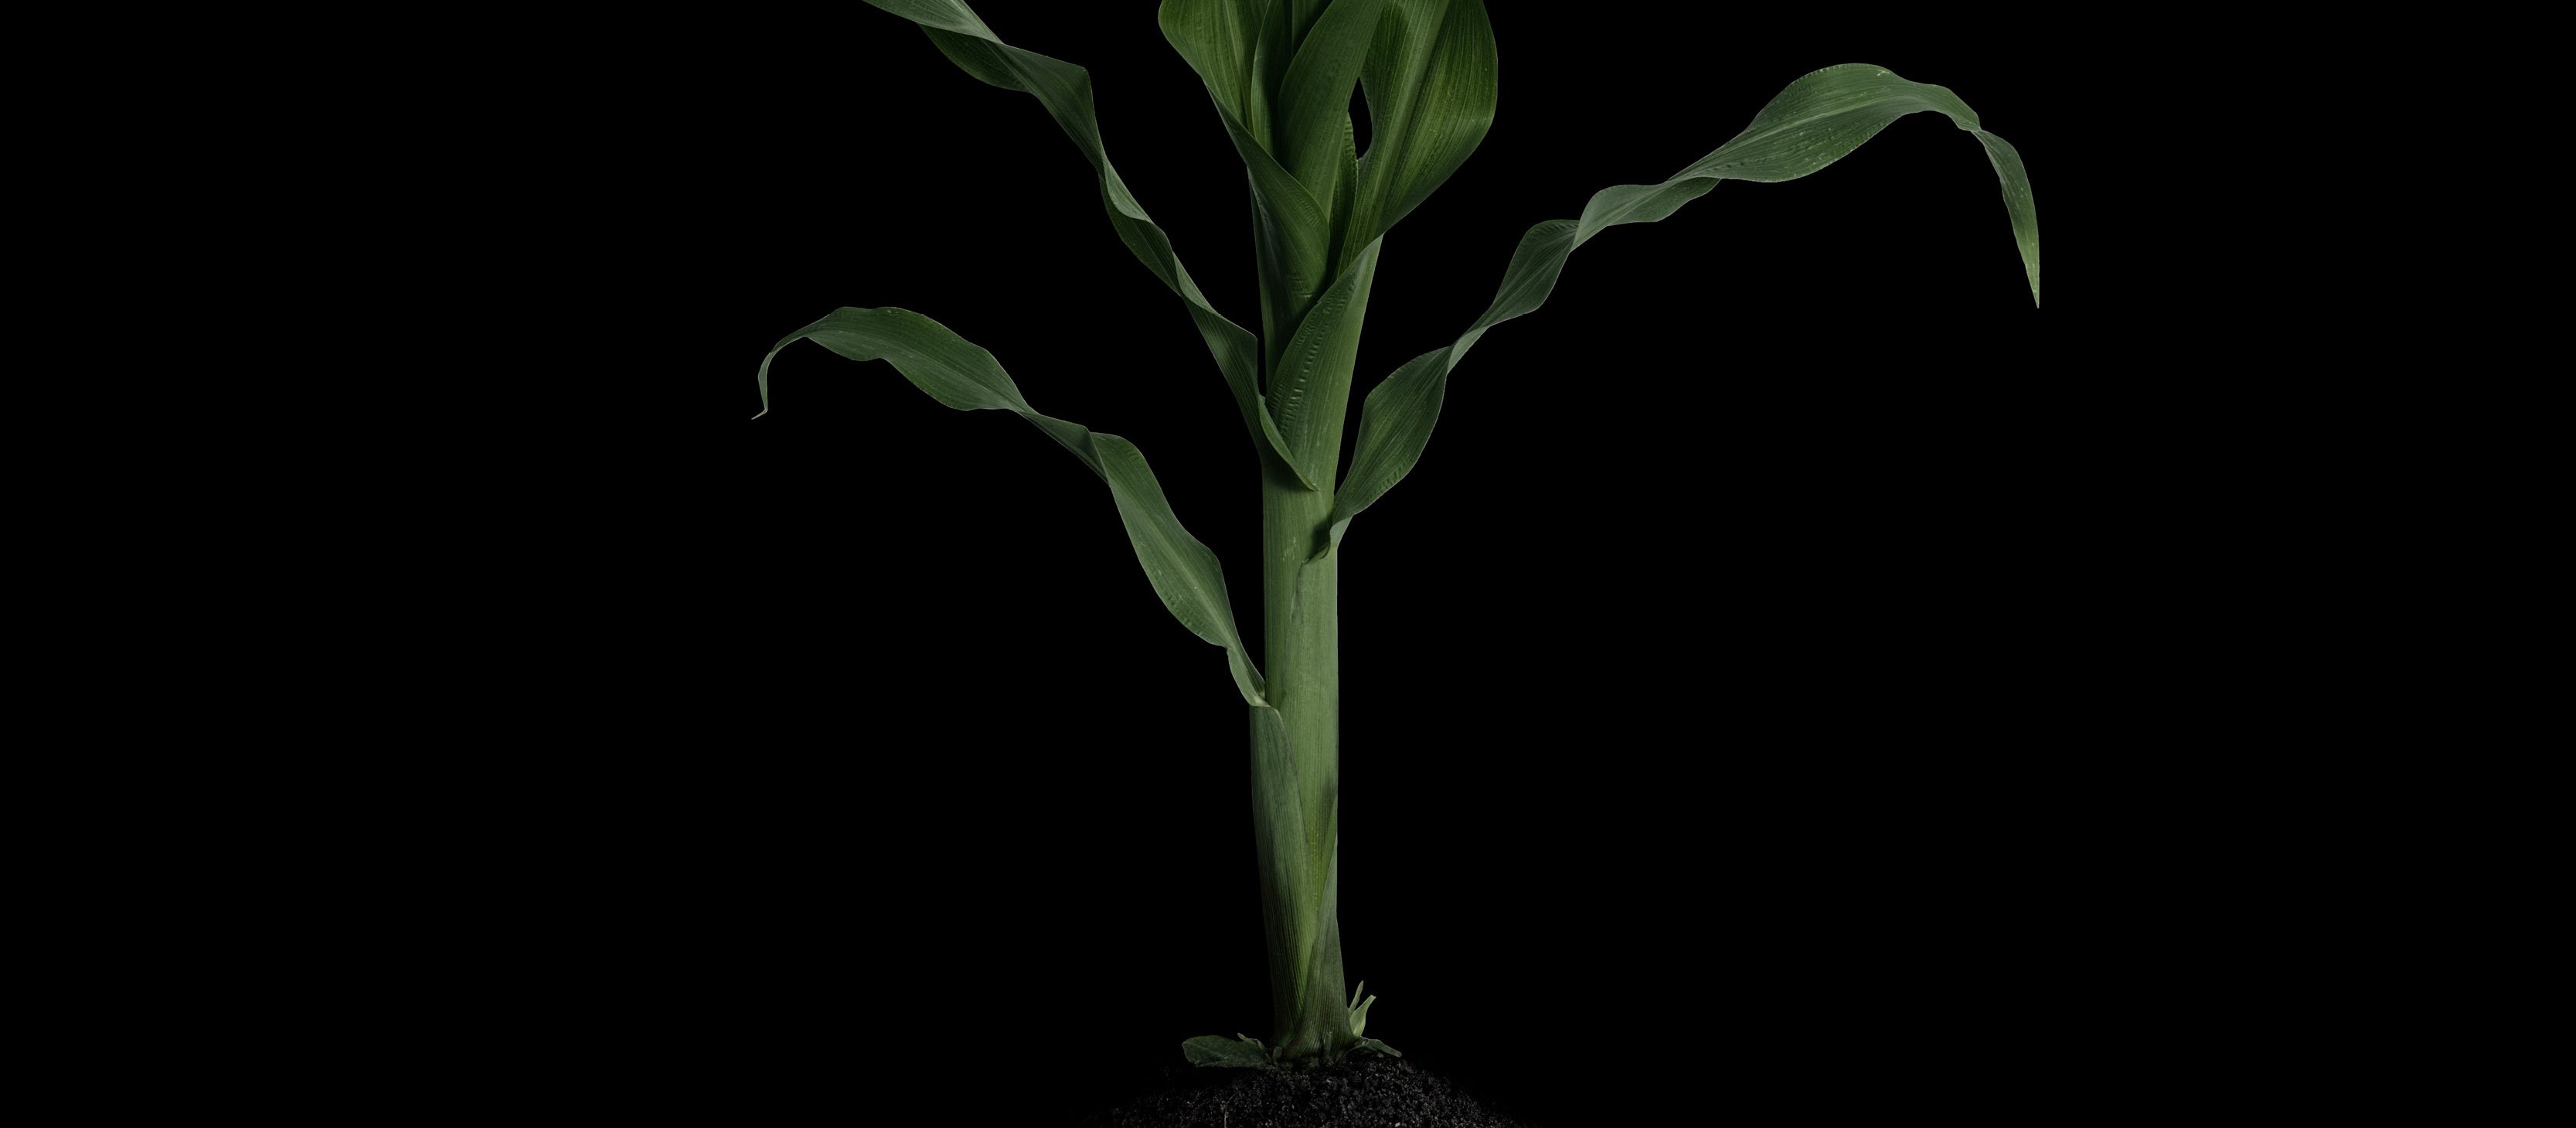 En grön växt som symboliserar hållbarhet.